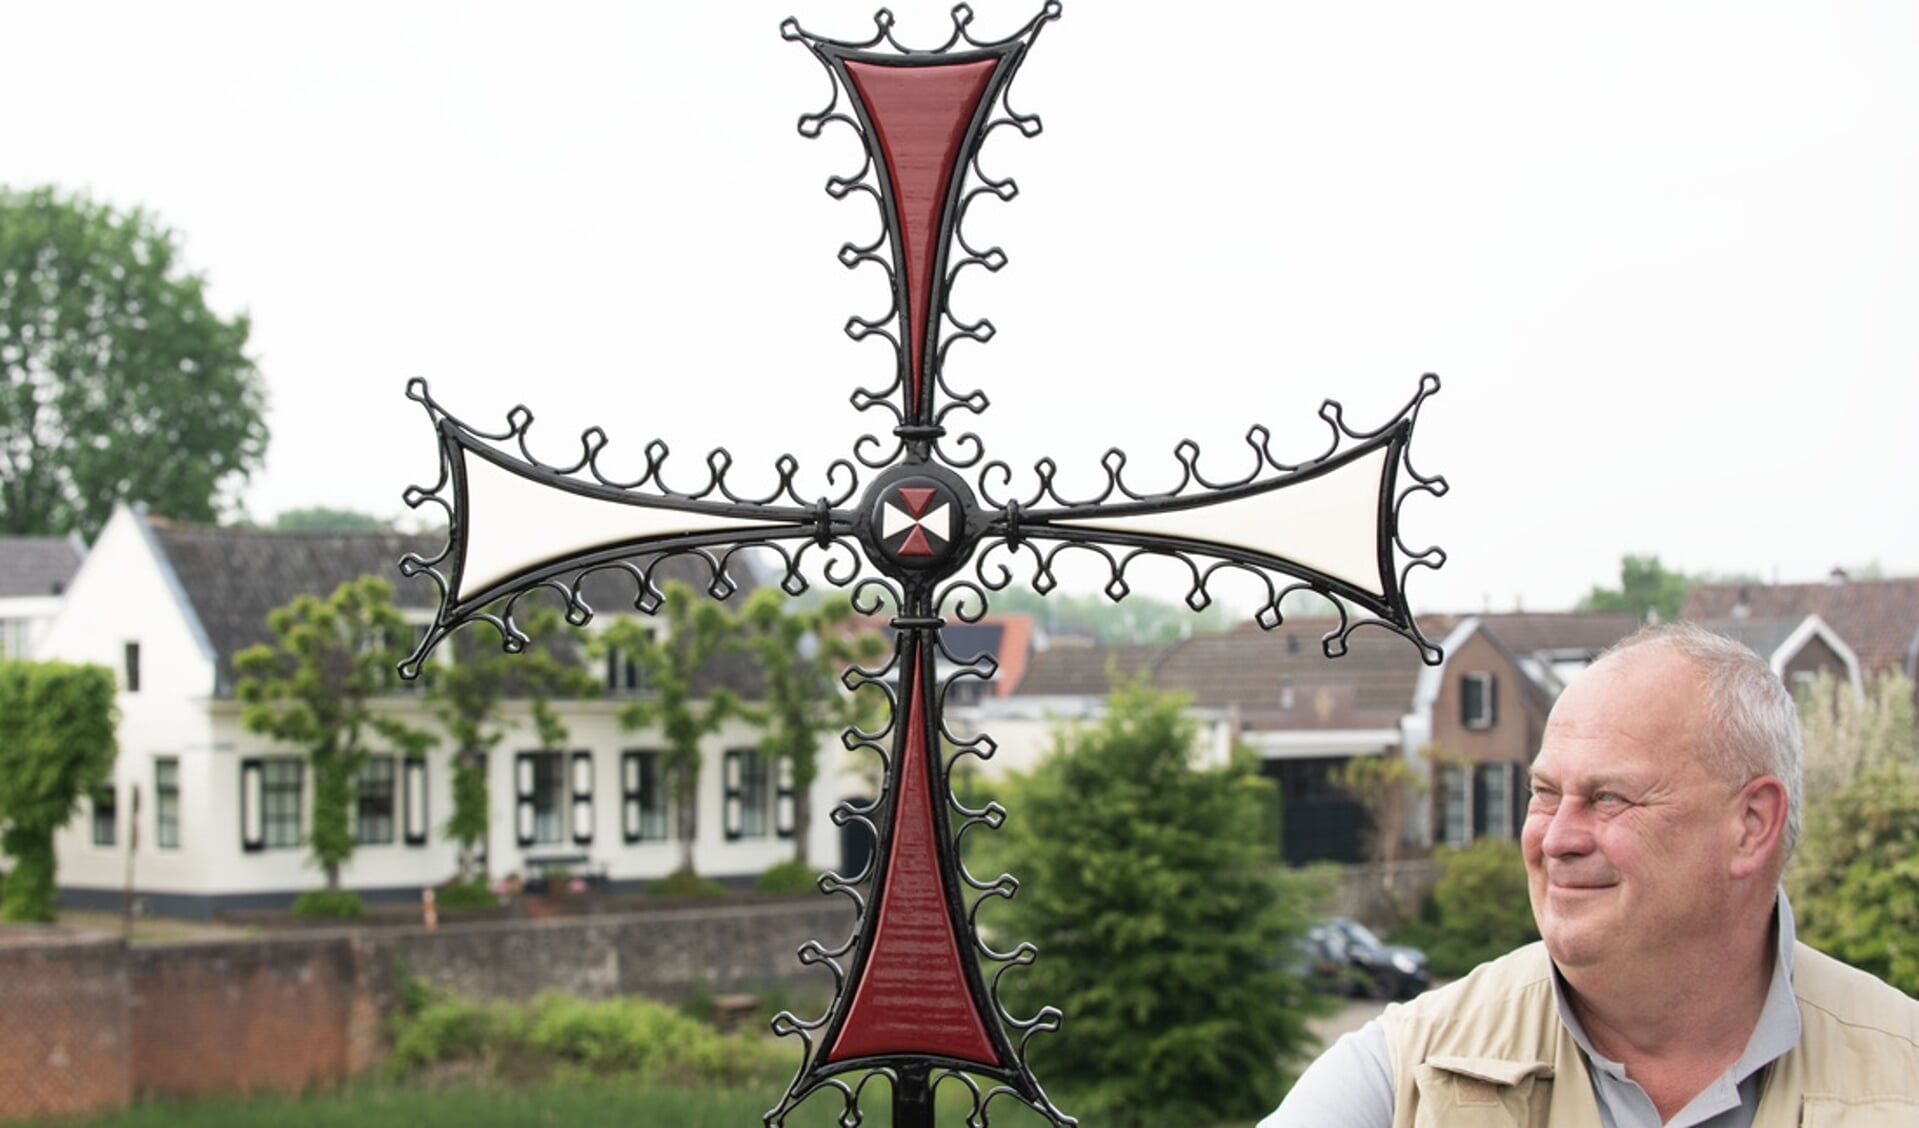 Vol trots toont Theo Witjes de nieuwe replica van het Kruisheren gevelkruis.